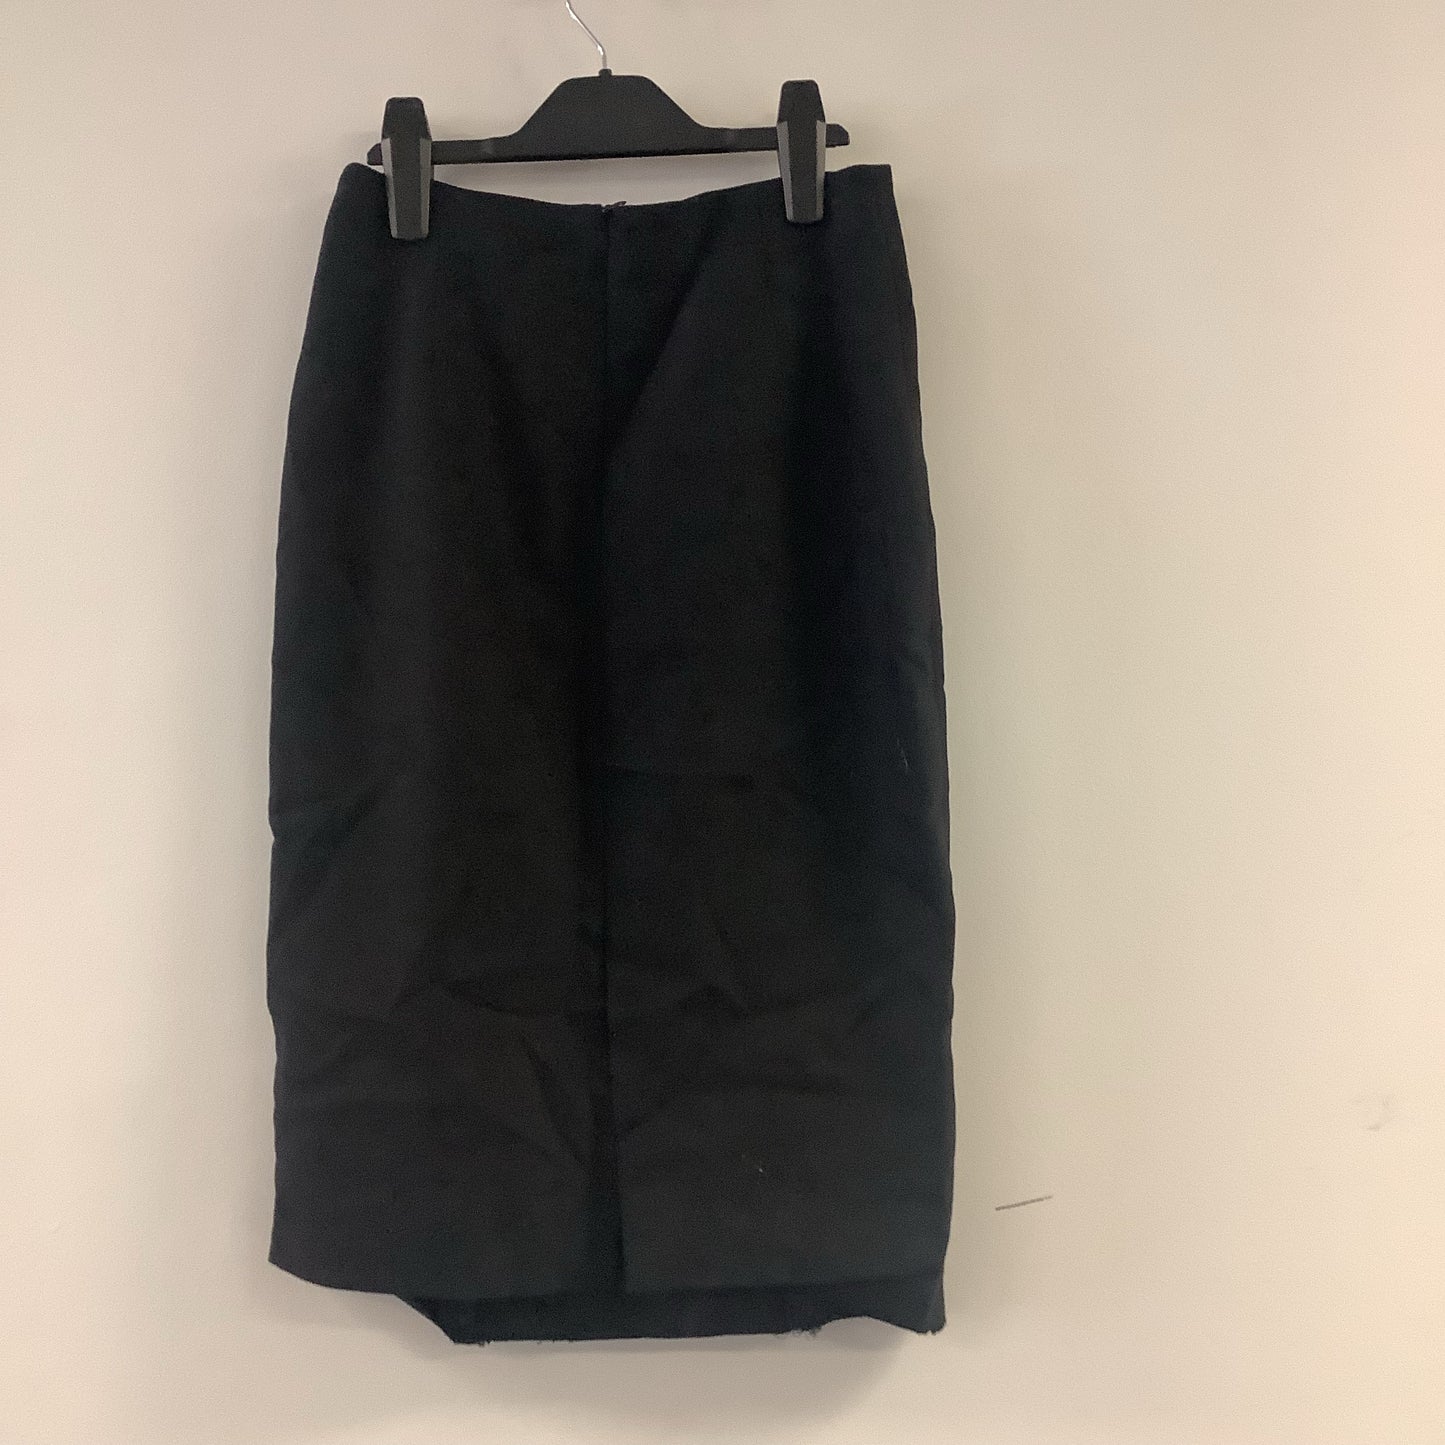 Zara Basic Black Skirt Size XS